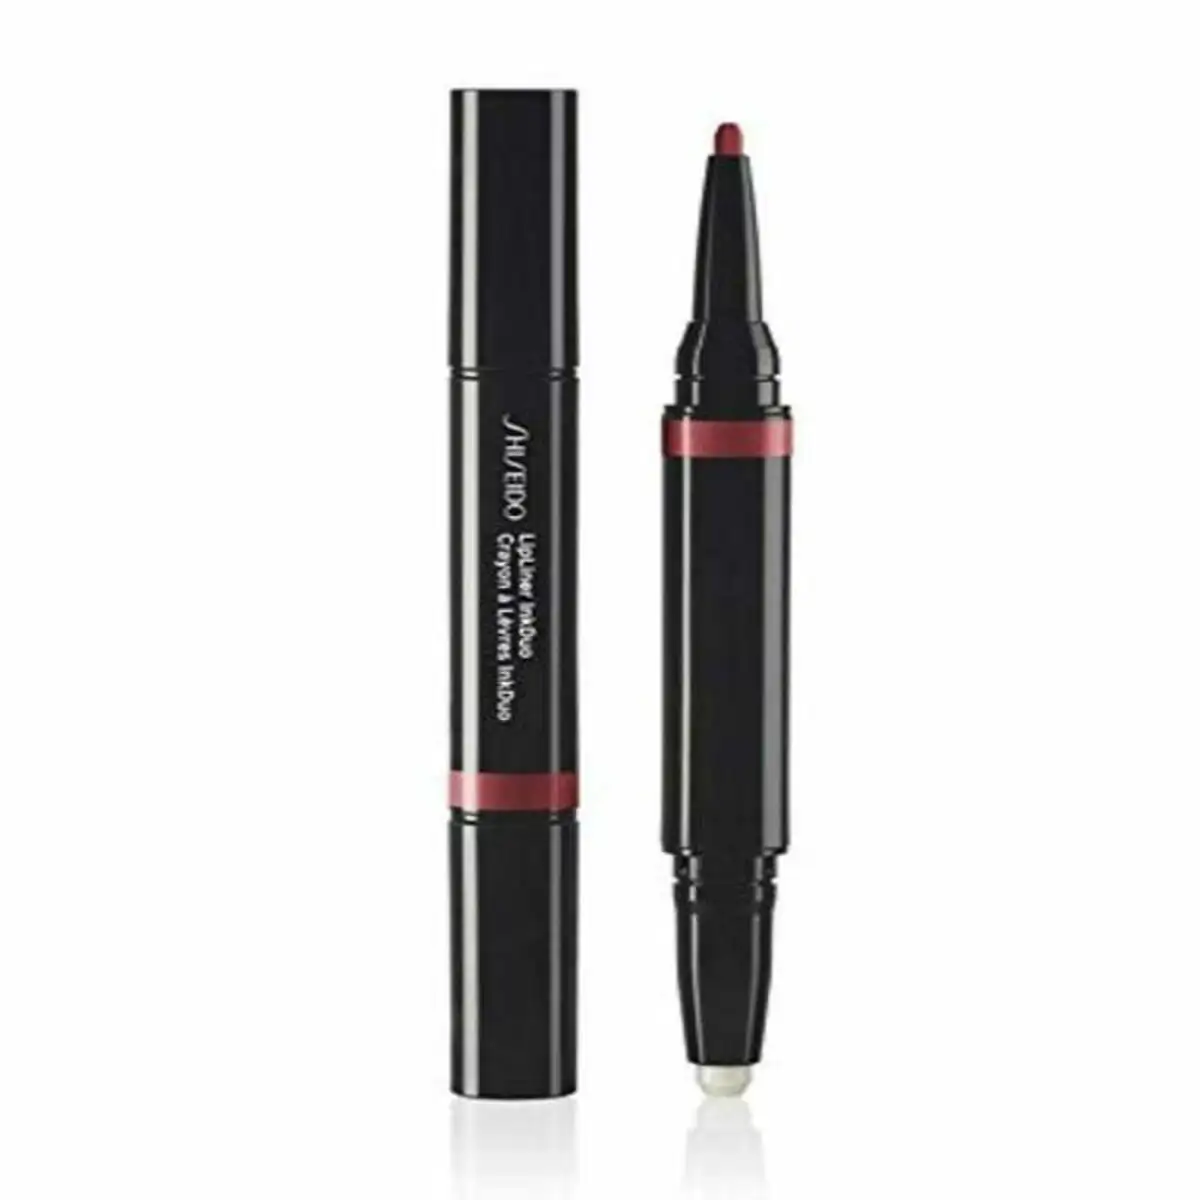 Crayon a levres inkduo shiseido 09 scarlet_9656. DIAYTAR SENEGAL - L'Art du Shopping Facilité. Naviguez sur notre plateforme en ligne pour découvrir une expérience d'achat fluide et agréable, avec une gamme de produits adaptés à tous.